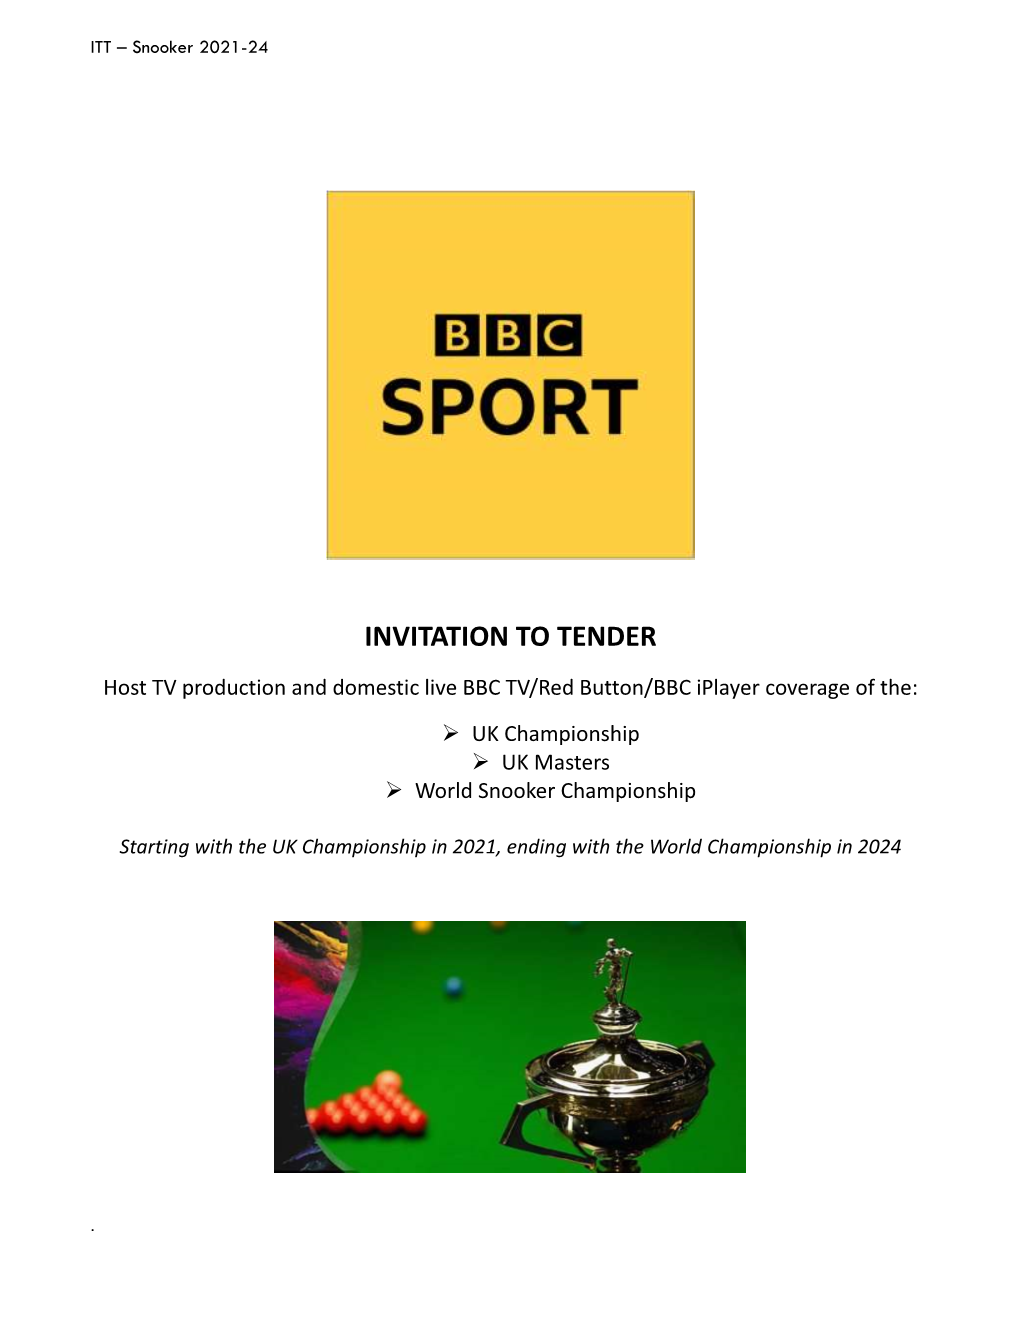 BBC Sport Snooker ITT 2021-24